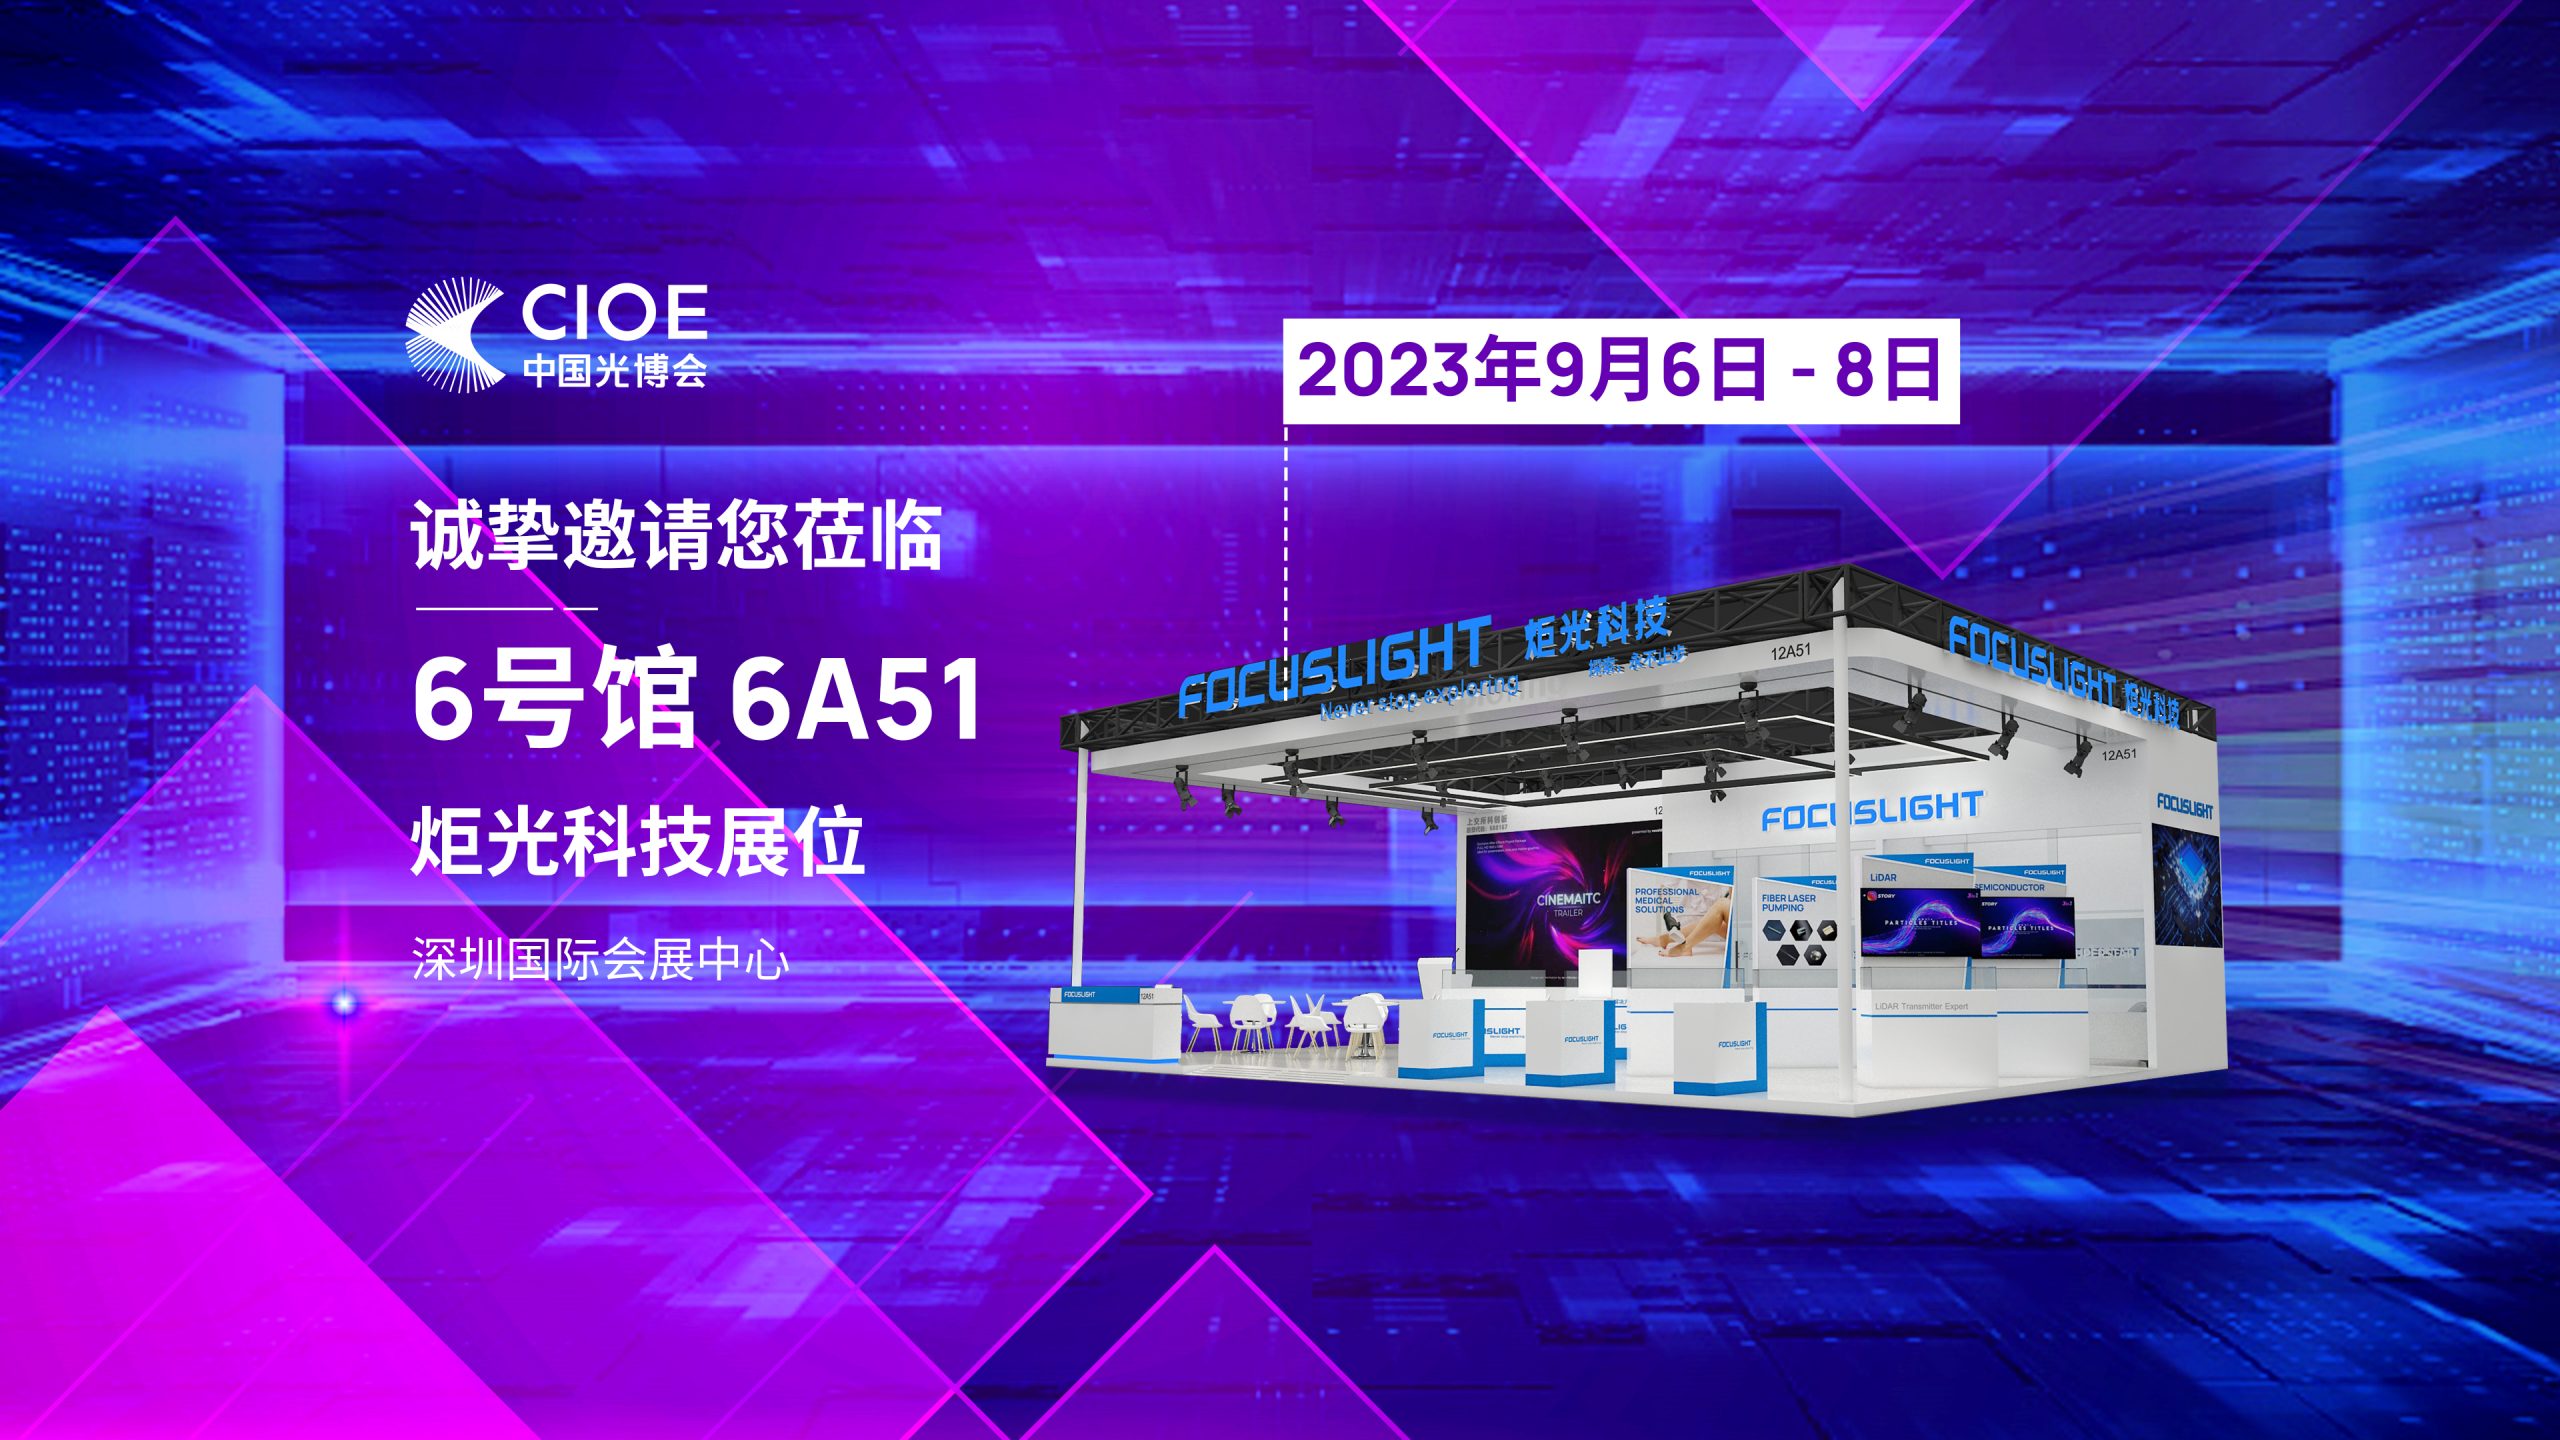 展会预告 | 炬光科技即将参展2023年中国光博会